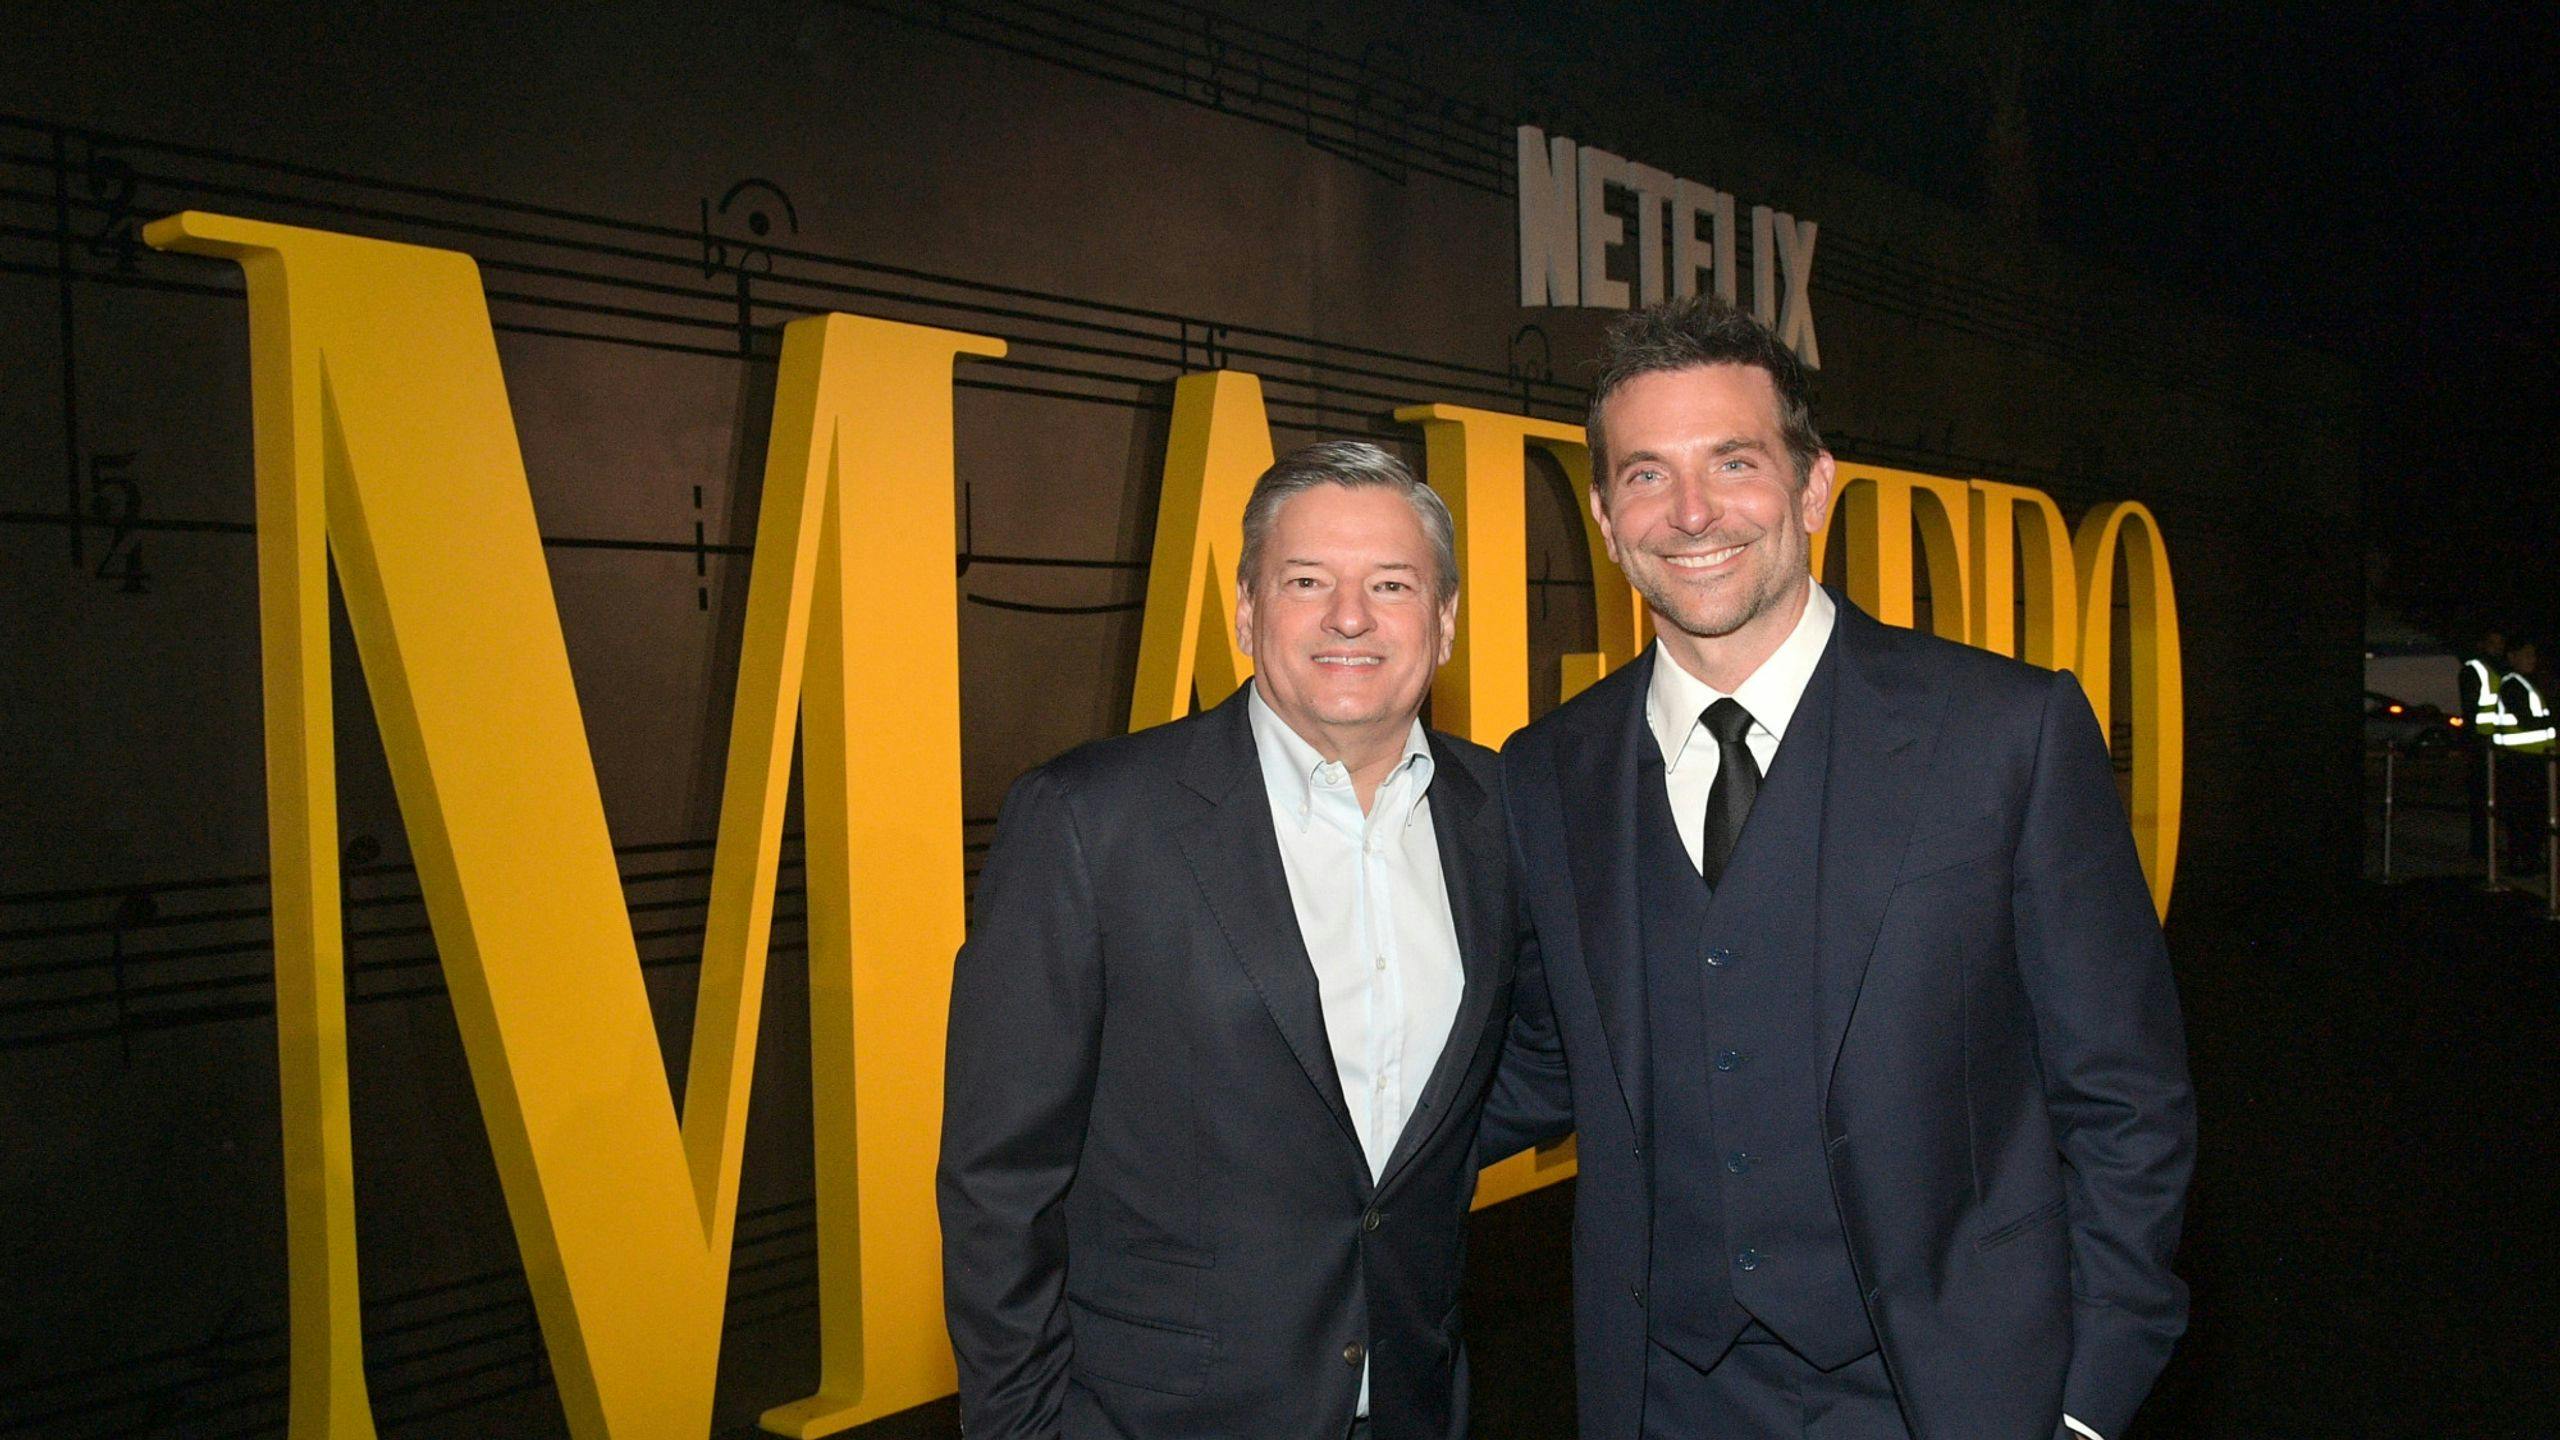 Fotografía del co-Ceo de Netflix Ted Sarandos junto al actor y director Bradley Cooper durante la presentación de 'Maestro¡ en Los Angeles